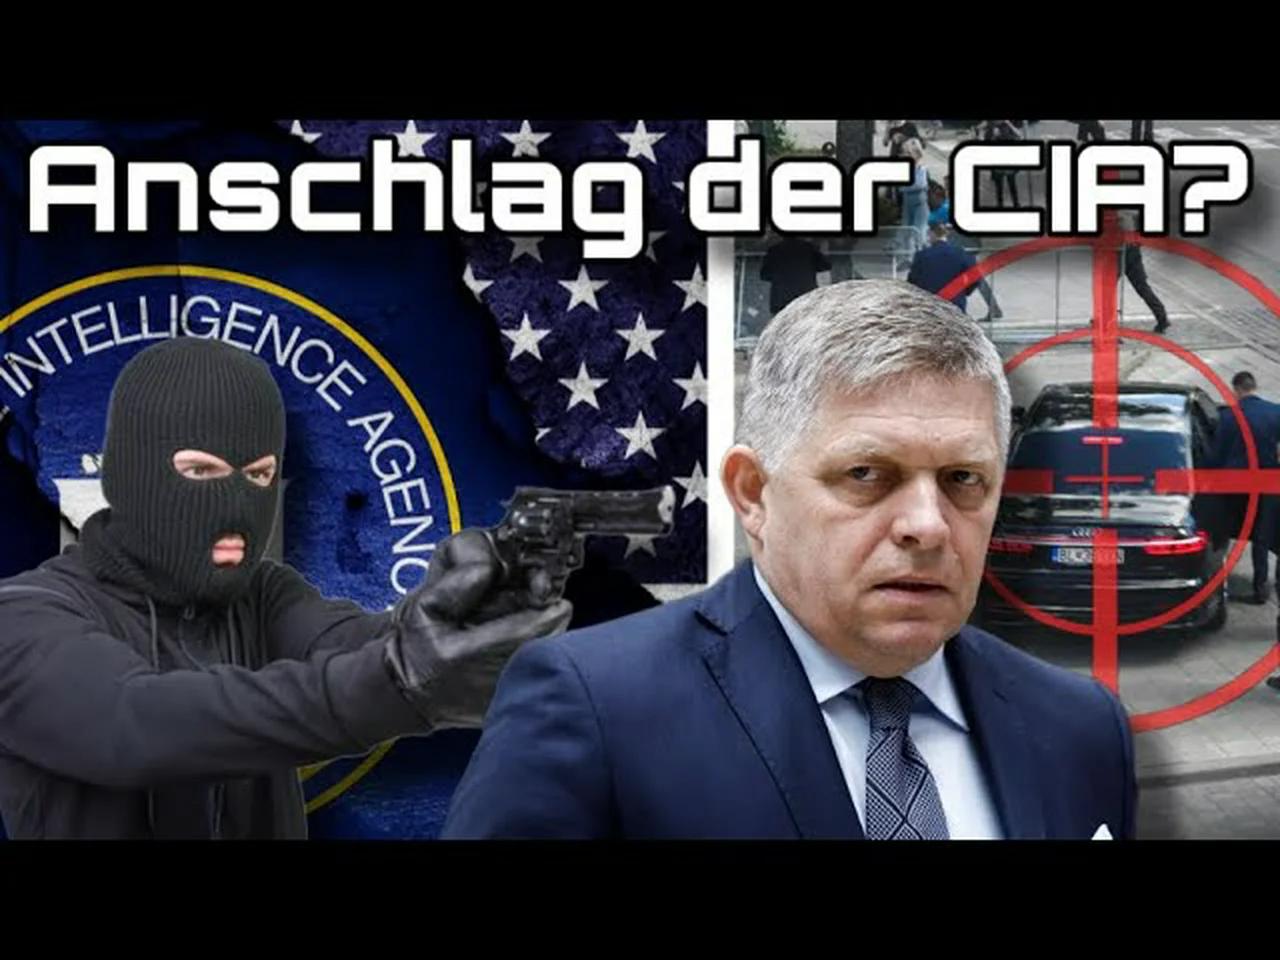 ⁣Schüsse auf Fico: Ein MK Ultra-Attentat der CIA?